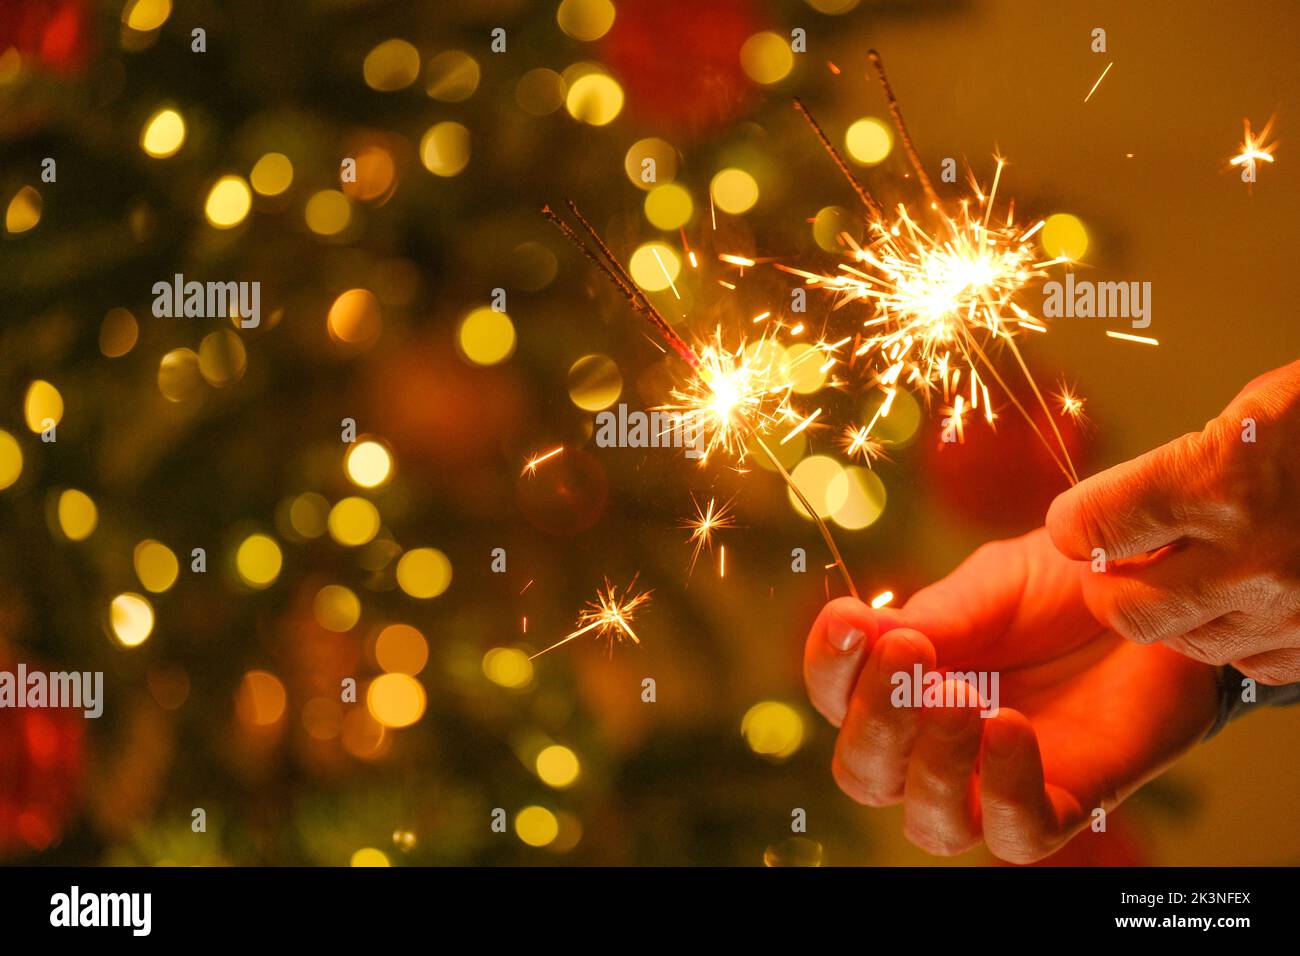 Weihnachtsbeleuchtung.Weihnachts- und Neujahrsparty. Funkelndes bengalisches Feuer in den Händen.Bengalisches Licht auf Girlanden auf einem festlichen Christbaumhintergrund Stockfoto